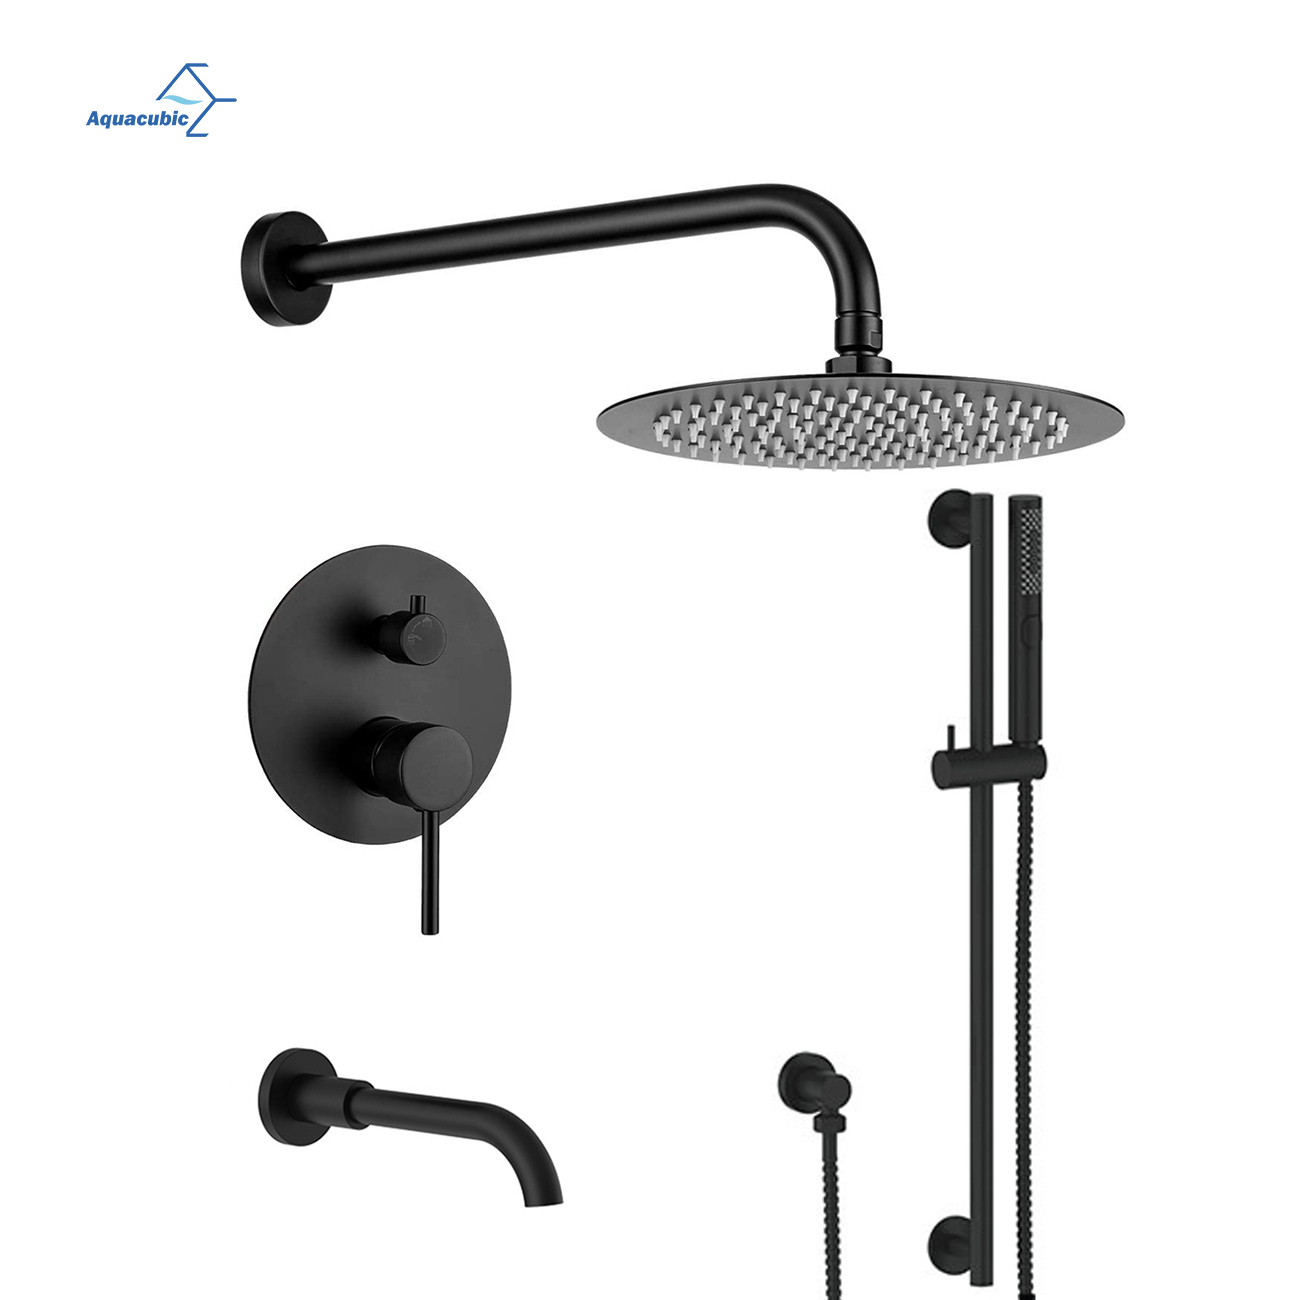 Sistema de ducha Aquacubic con grifo de ducha negro con cabezal de ducha de mano